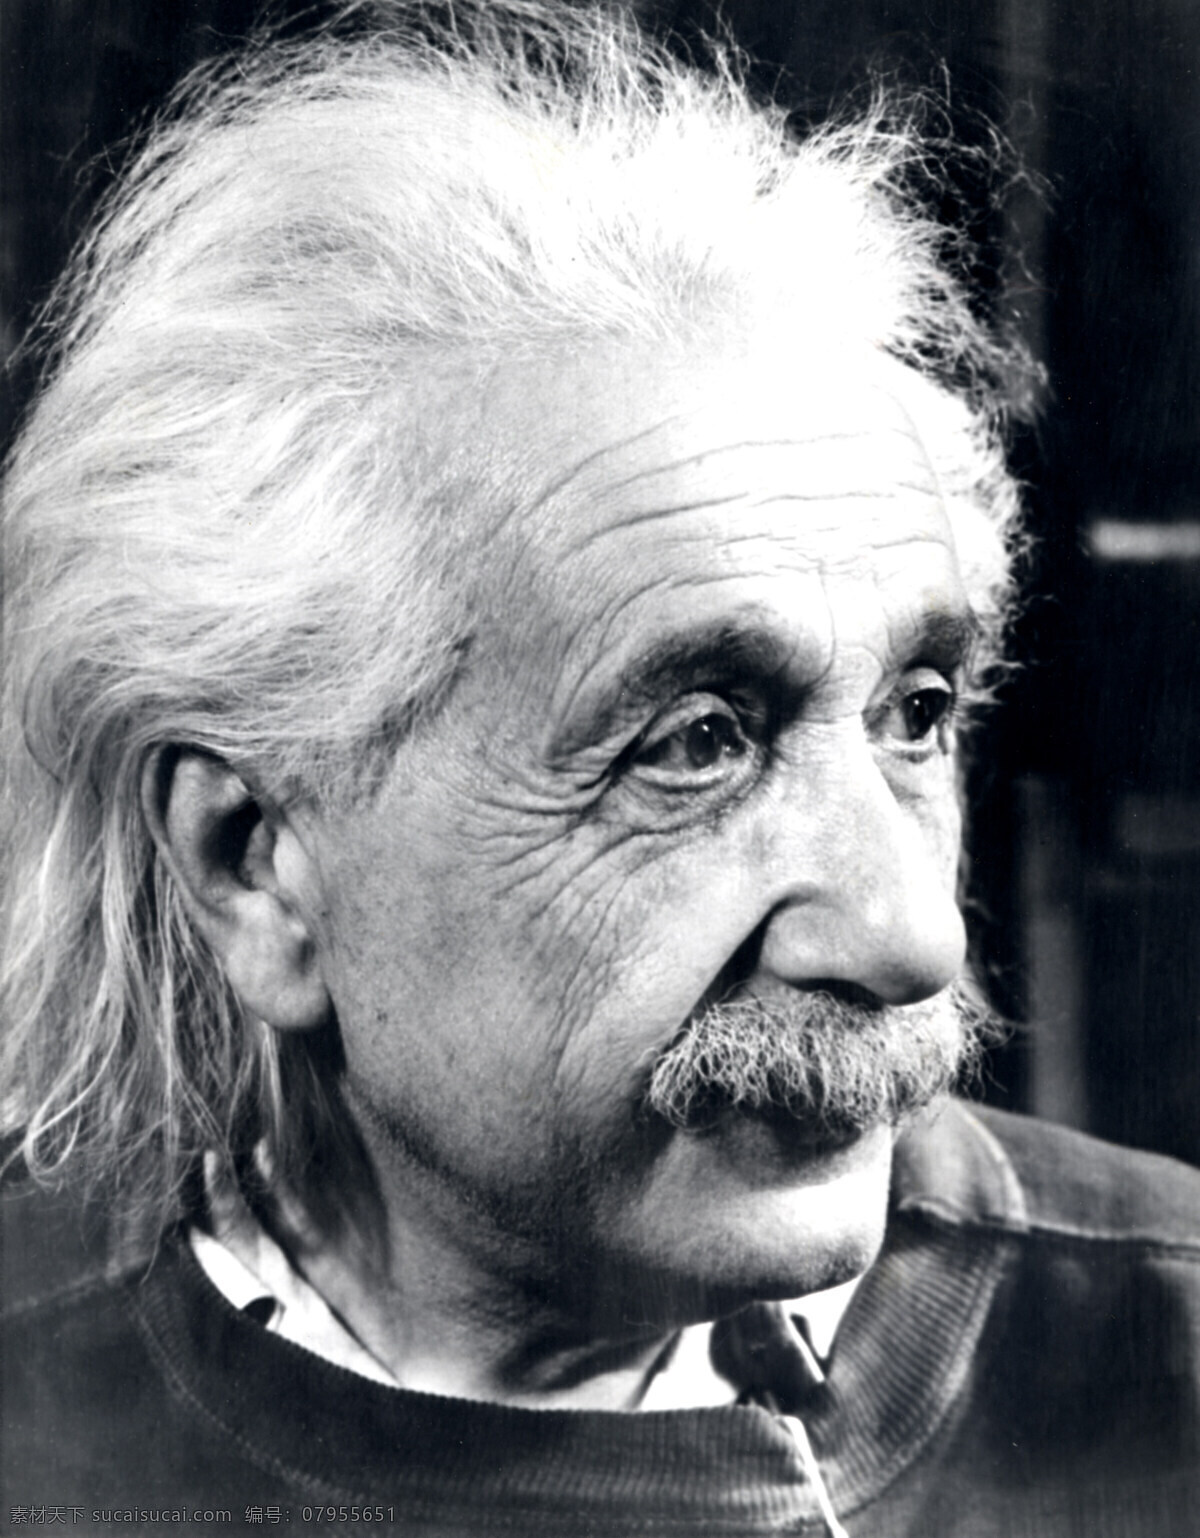 阿尔伯特 爱因斯坦 albert einstein 科学家 物理学家 思想家 哲学家 人 人物 名人 老人 男人 男性 长发 白发 胡子 头像 黑白 黑白相片 黑白照片 黑白图片 摄影图库 人物图库 男性男人